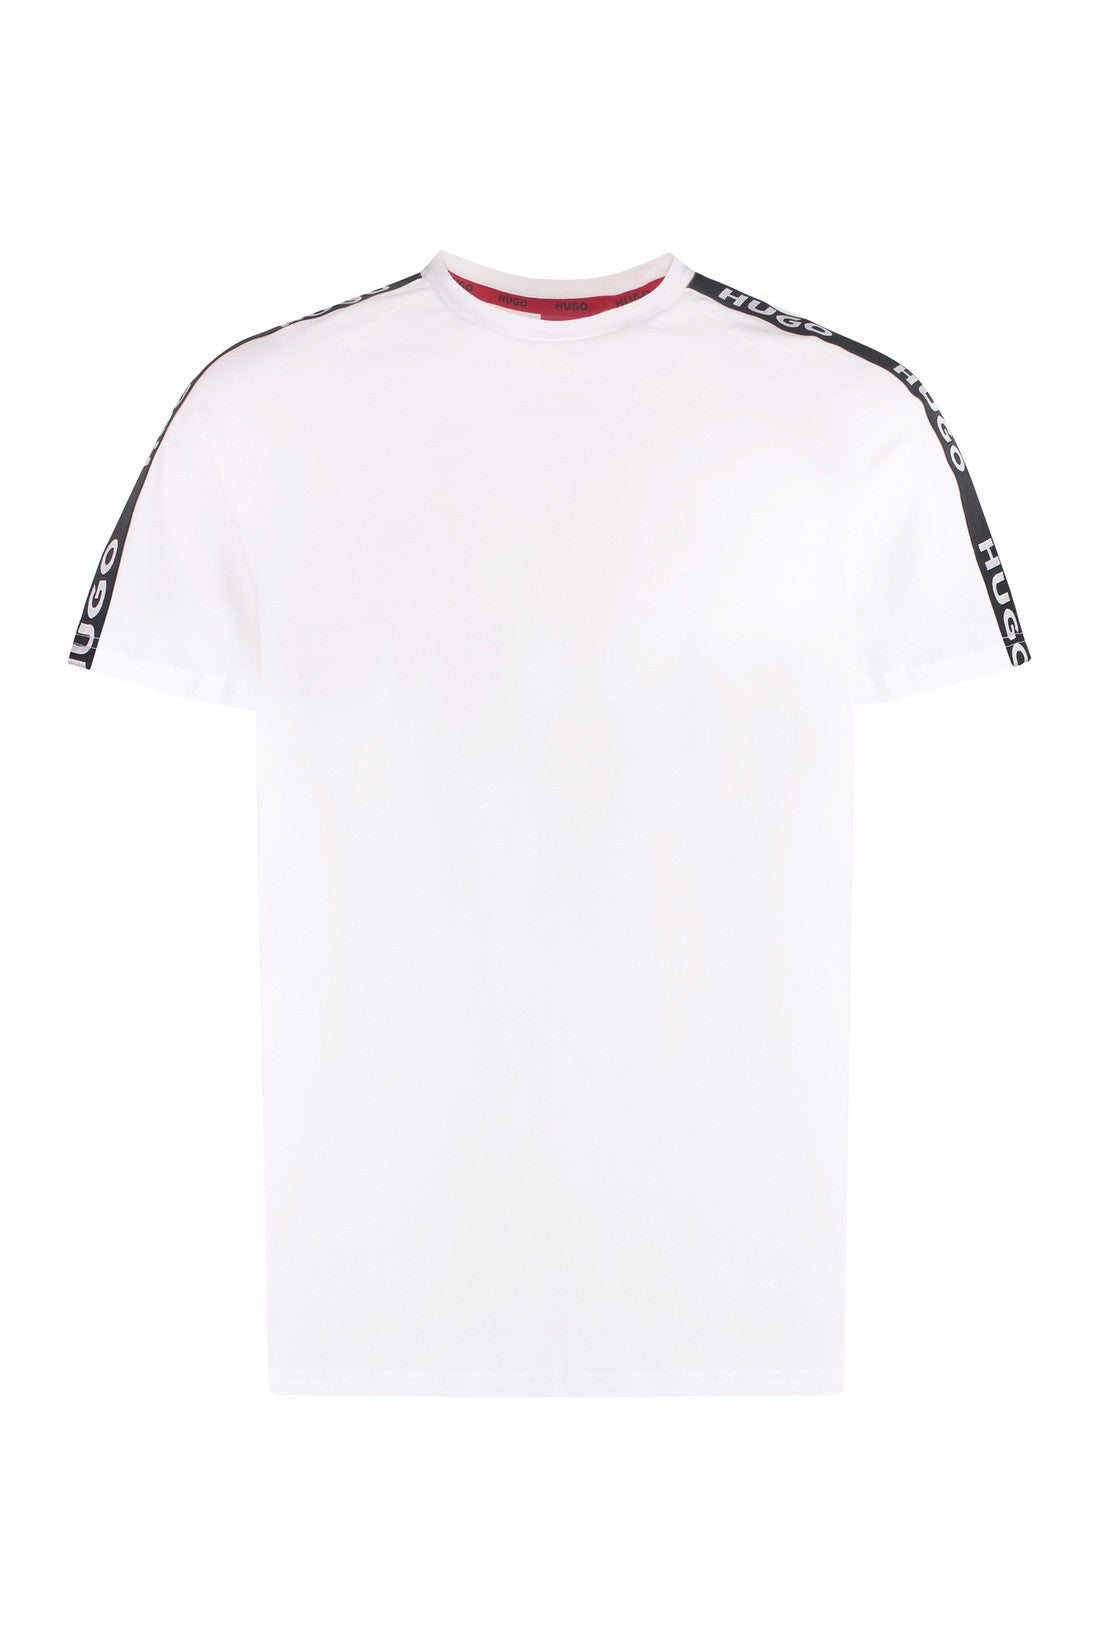 BOSS-OUTLET-SALE-Cotton crew-neck T-shirt-ARCHIVIST